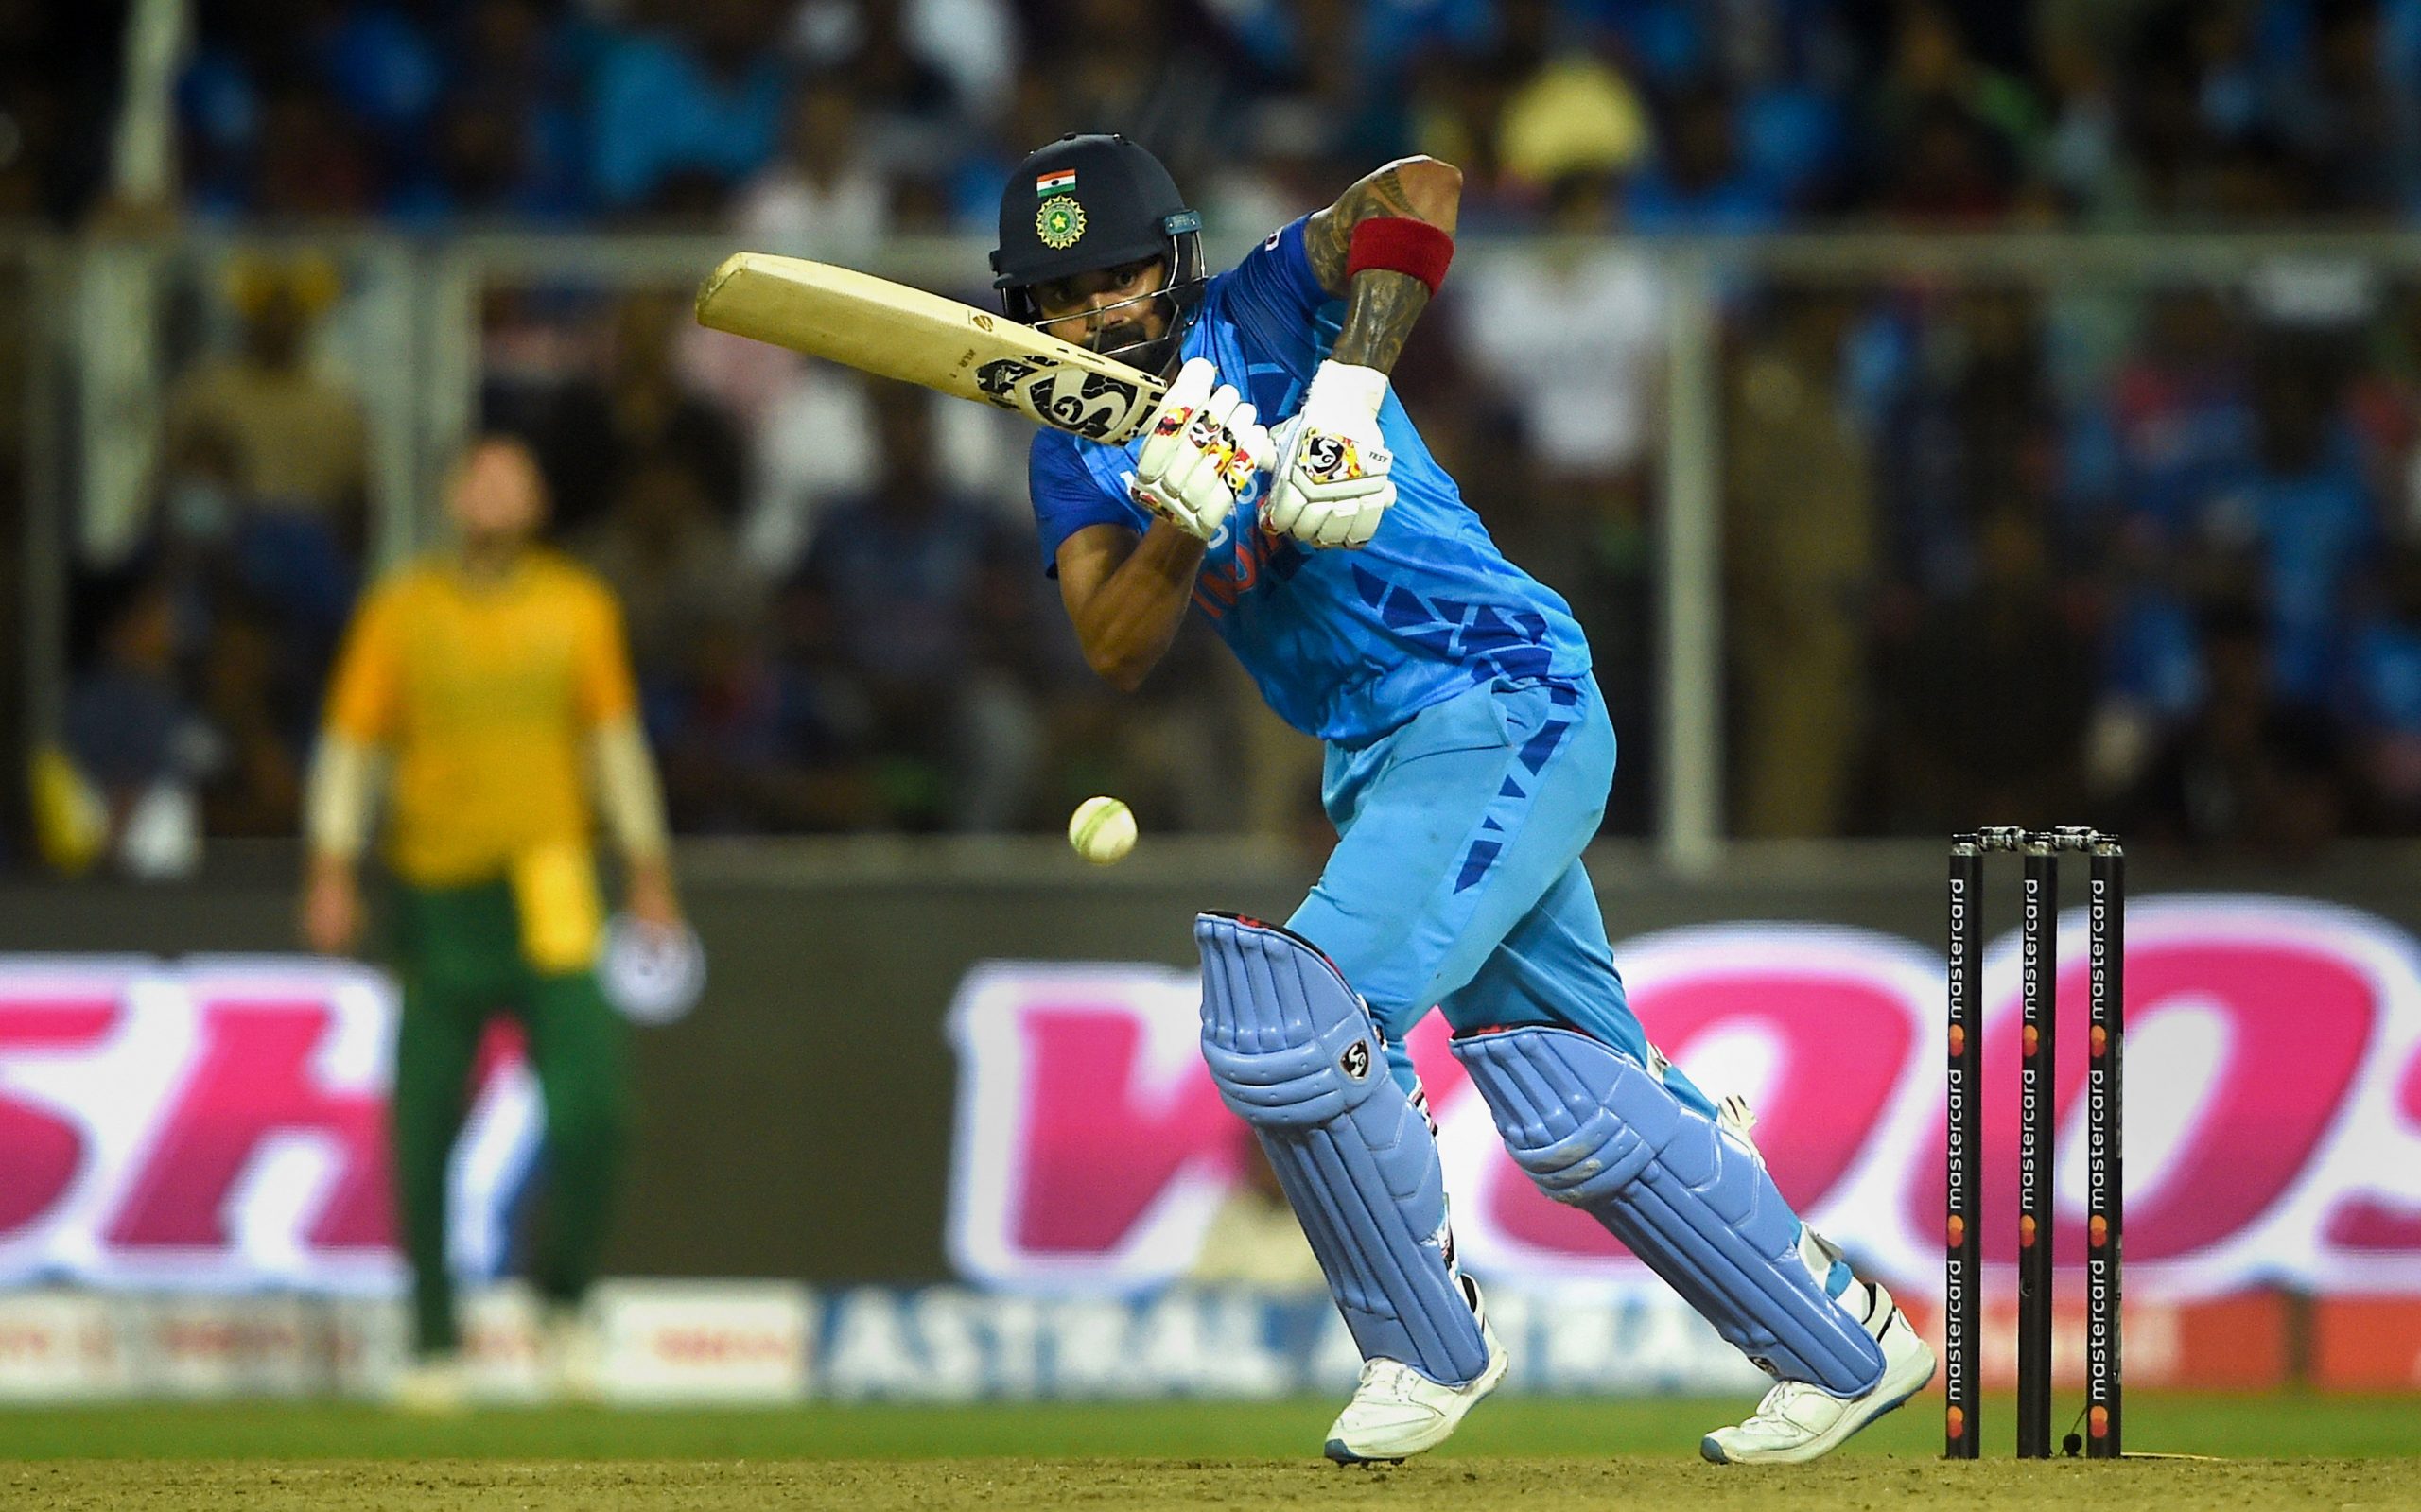 3rd T20I: Virat Kohli, KL Rahul rested against South Africa